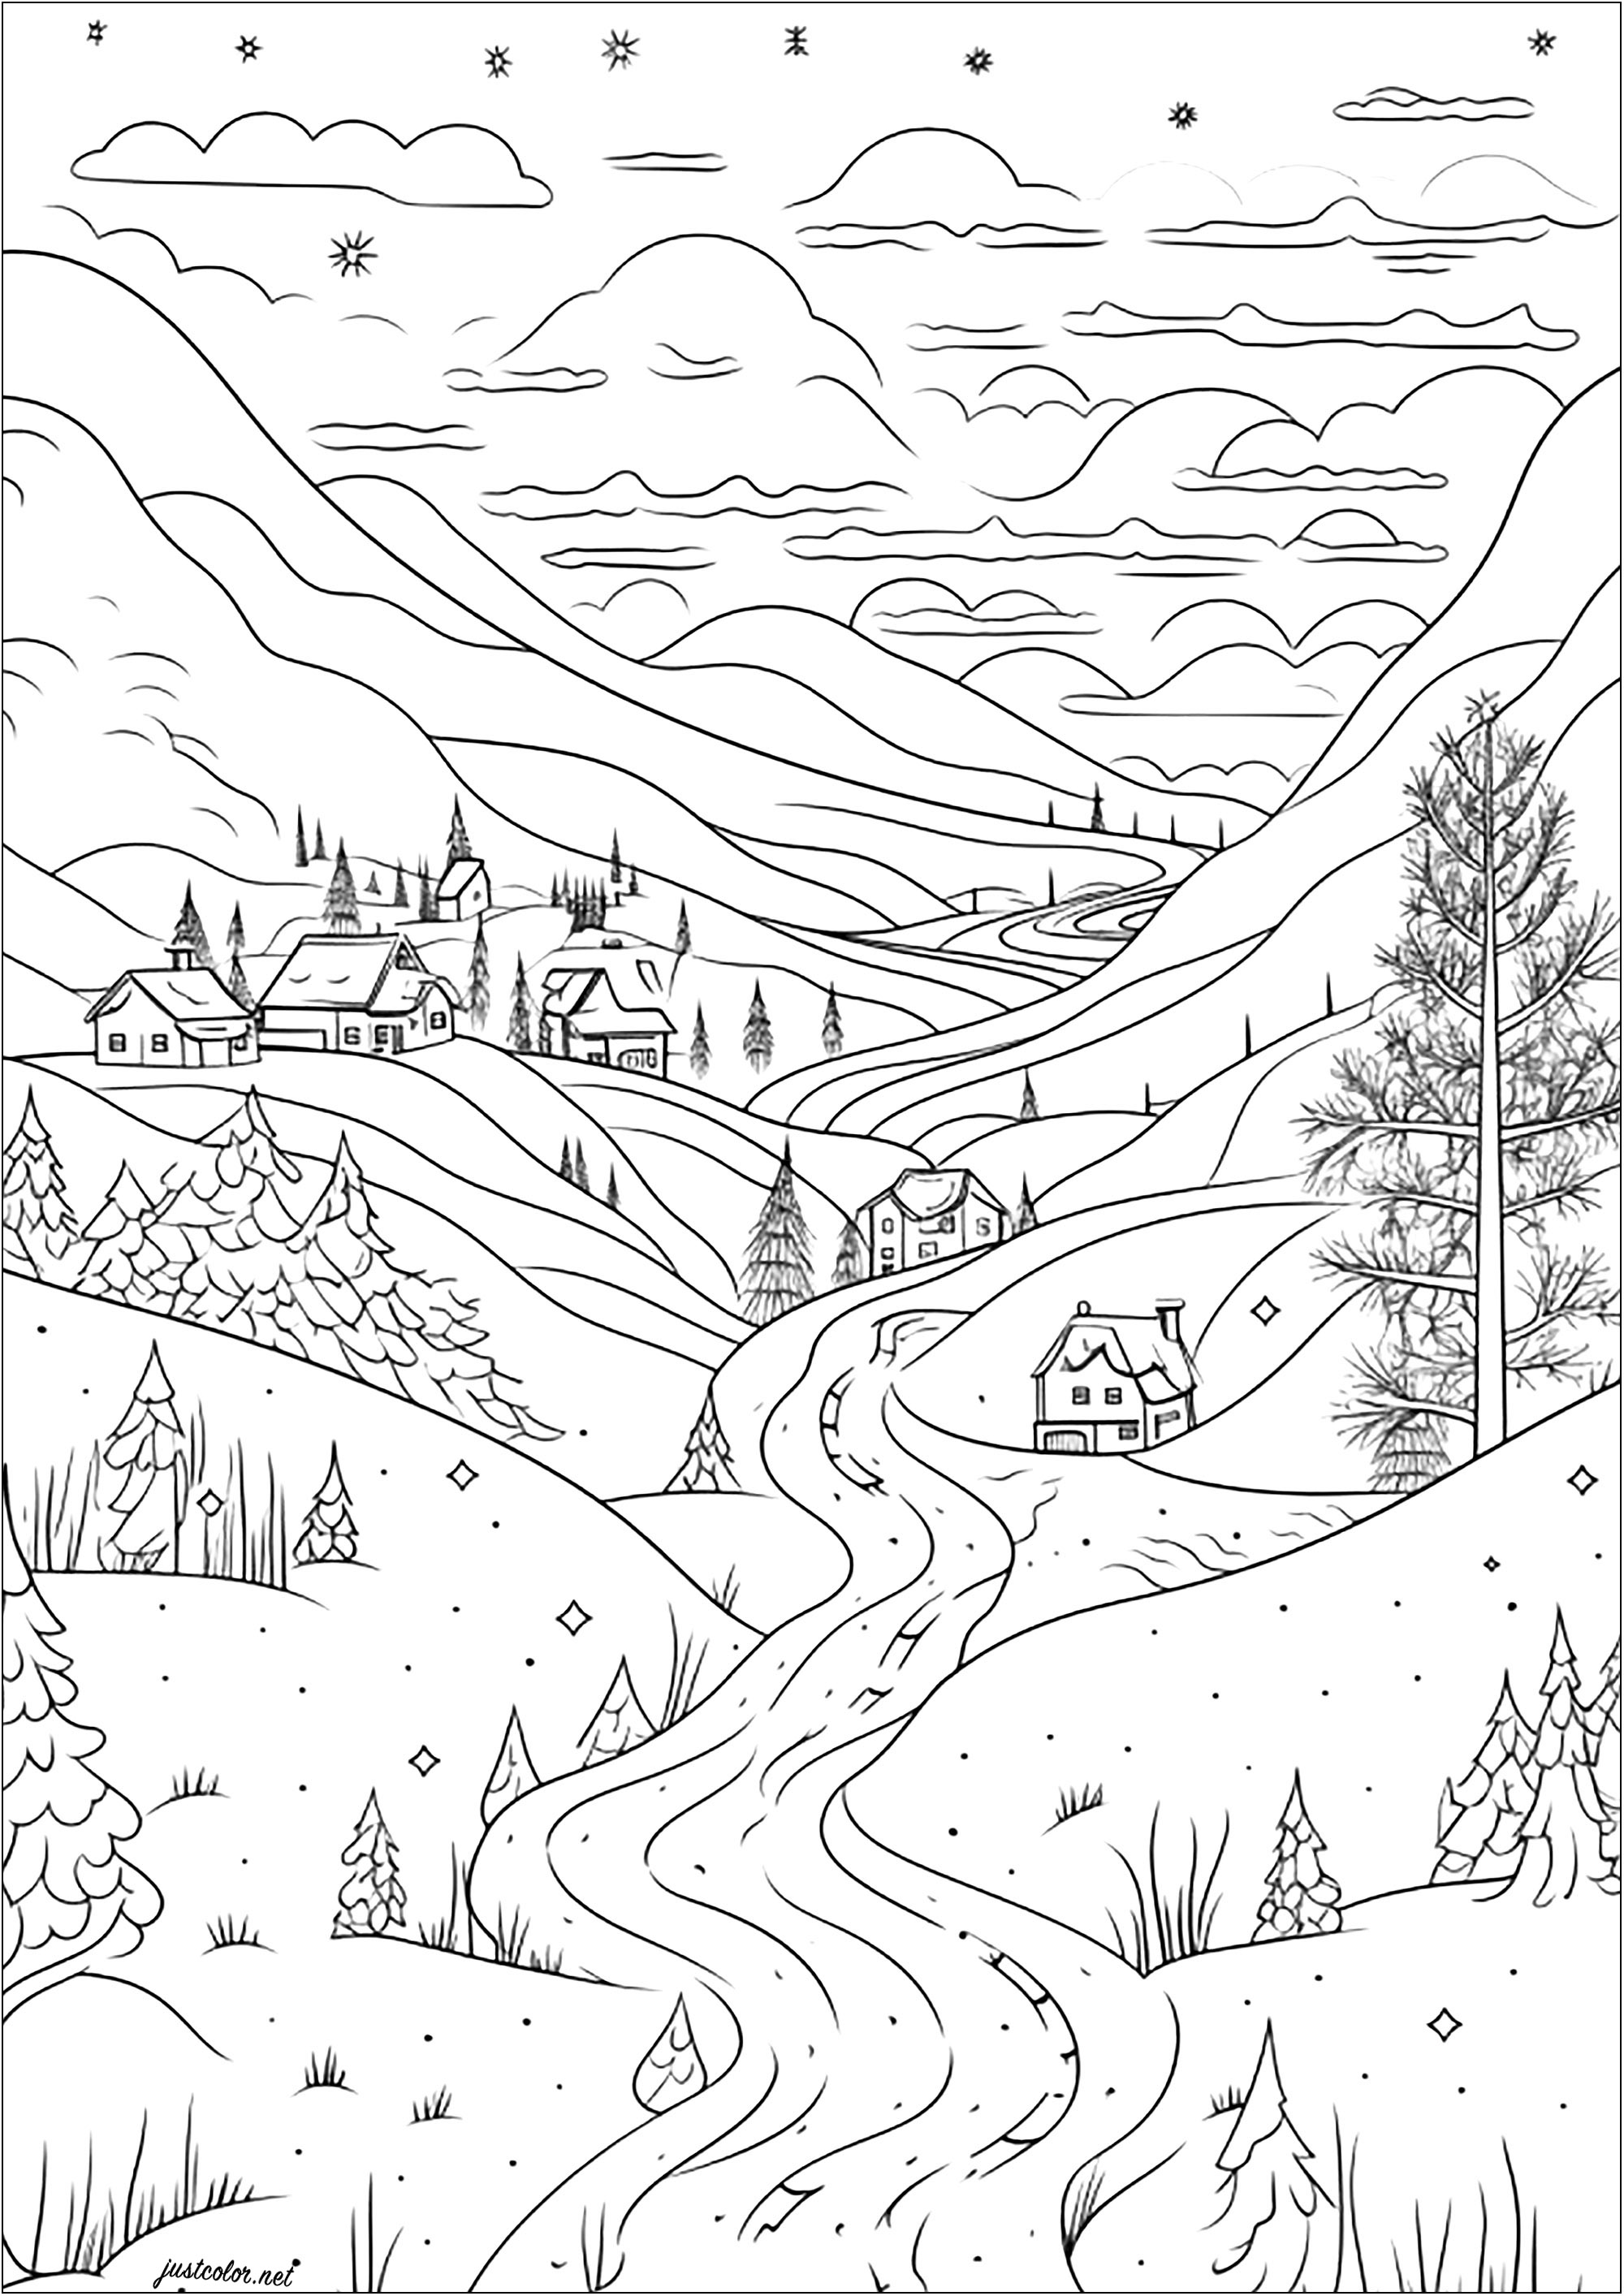 Uma bonita aldeia coberta de neve. Casas bonitas, abetos e montanhas